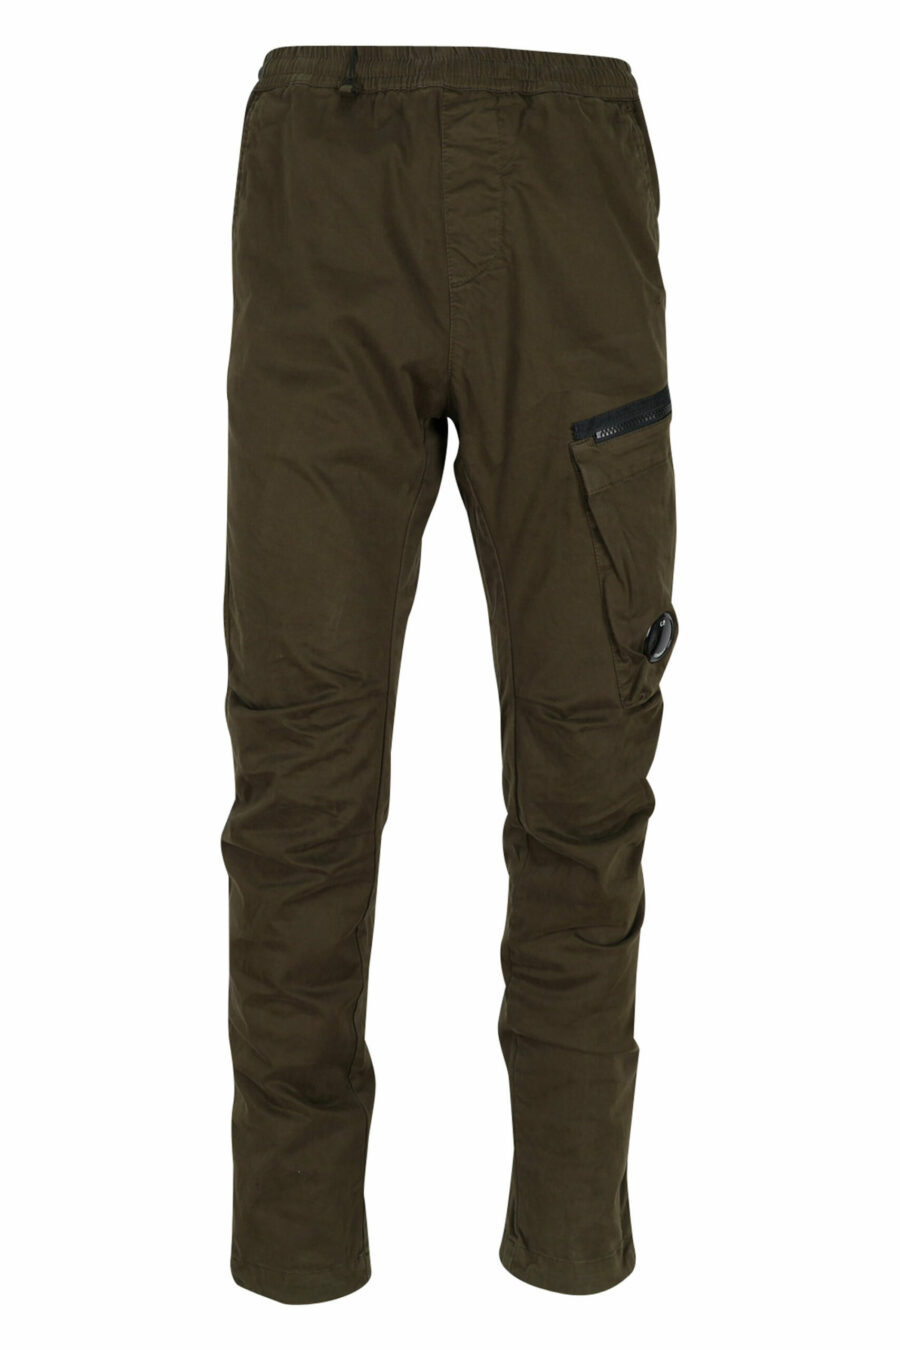 Militärgrüne Hose aus Stretch-Satin mit Seitentasche und Logo-Linse - 7620943537833 skaliert